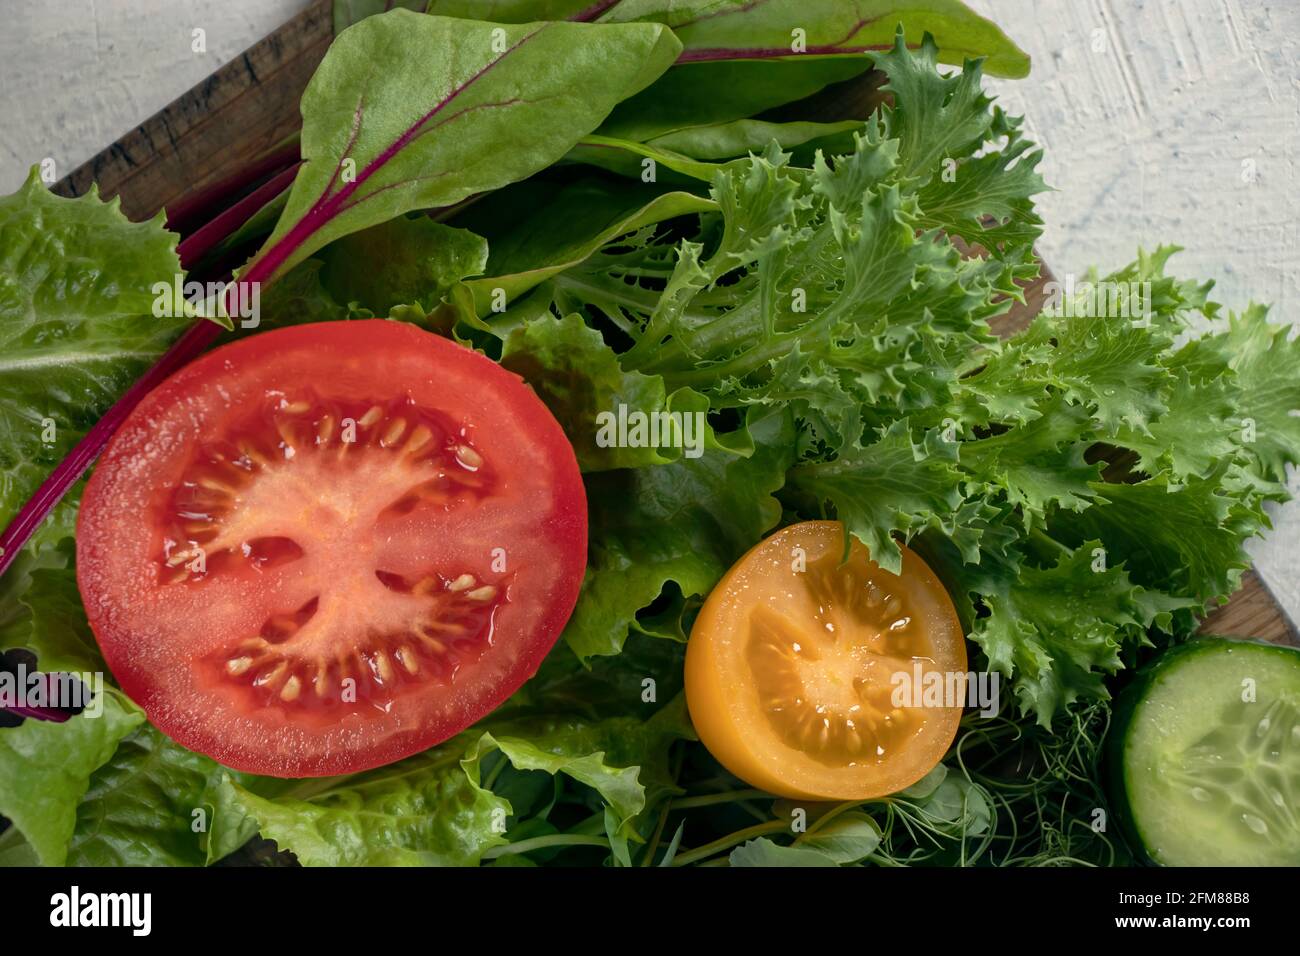 Nahaufnahme verschiedener Salatsorten und Gurken, roter und gelber Tomaten auf Schneidebrett. Junge saftige Sprossen aus Erbsen oder Bohnen, Rübensprossen und gree Stockfoto